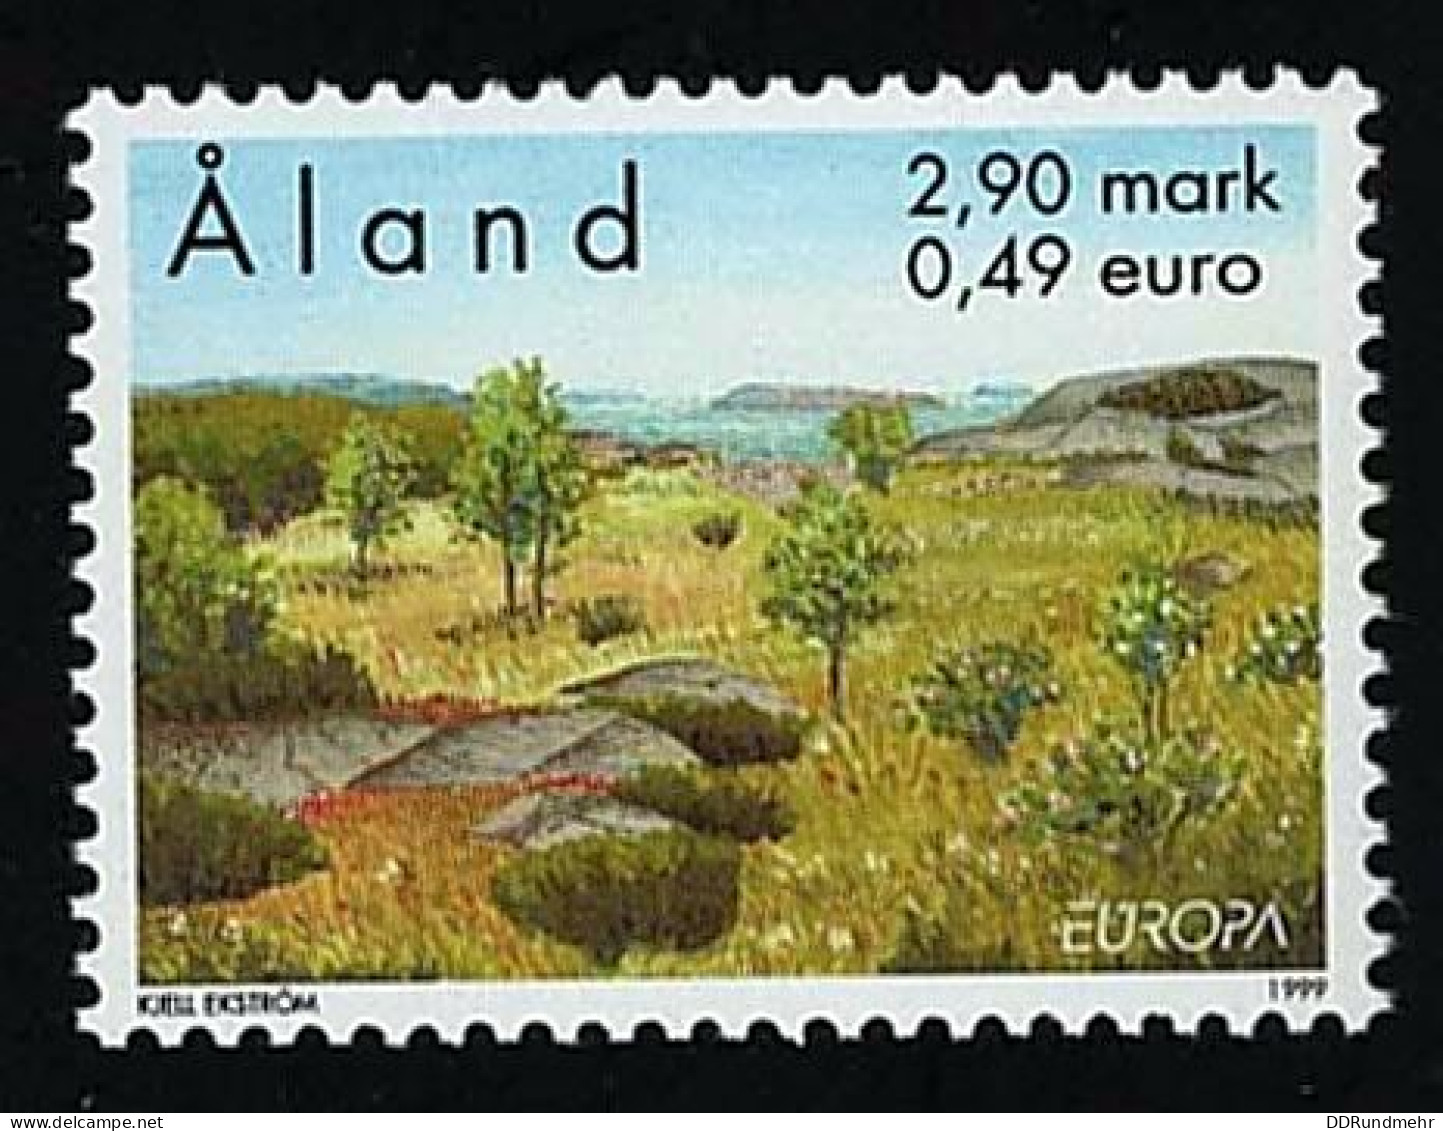 1999 Europa Michel AX 157 Stamp Number AX 157 Yvert Et Tellier AX 156 Stanley Gibbons AX 153 AFA AX 157 Xx MNH - Ålandinseln